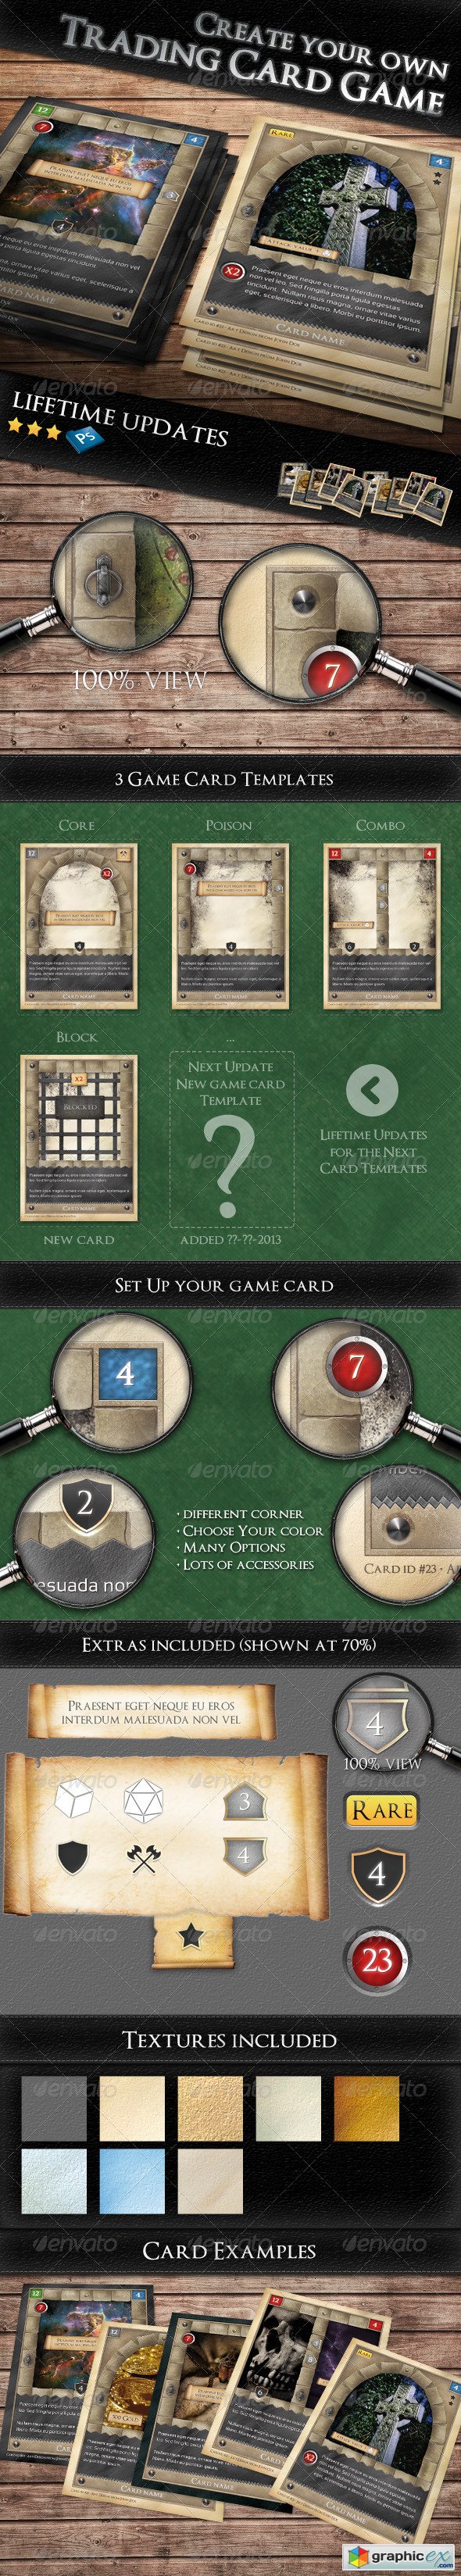 TCG - Fantasy Trading Card Game Kit in Medieval